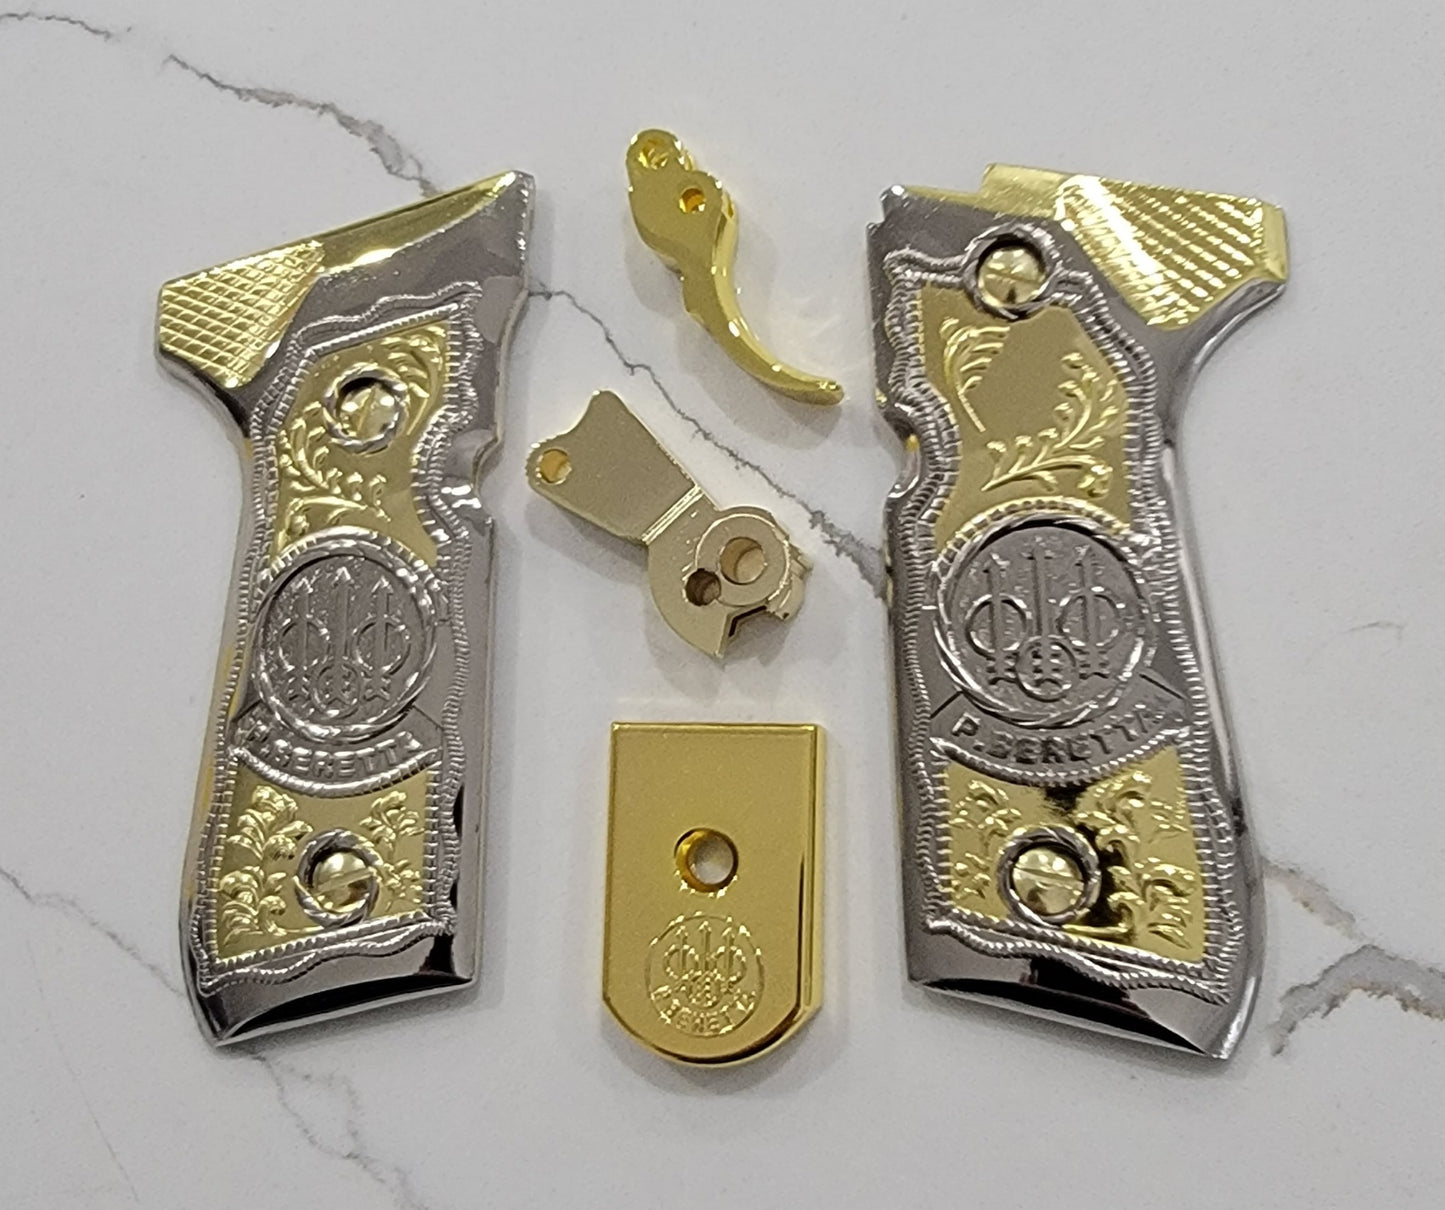 Combo Beretta Trigger 92F Metal Grips Beretta 92F, 92FS, M9, 96 Models Gold Nickel